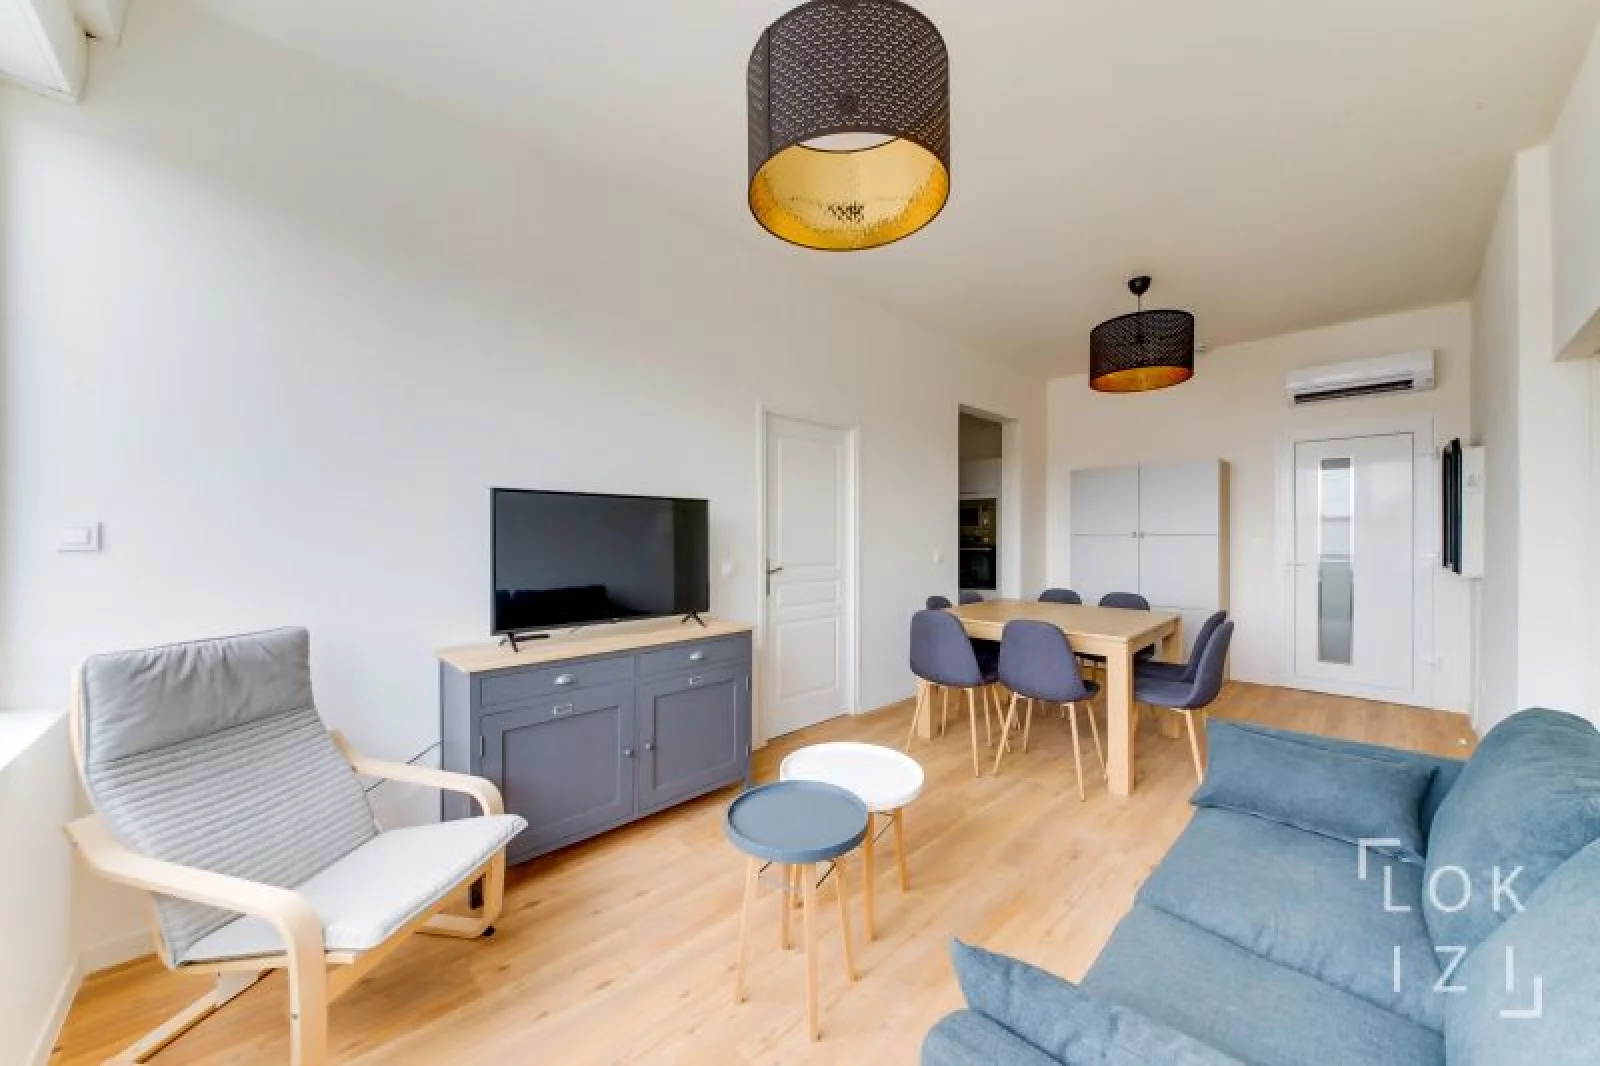 Location appartement meublé 3 pièces 61m² (Bordeaux - Nansouty)